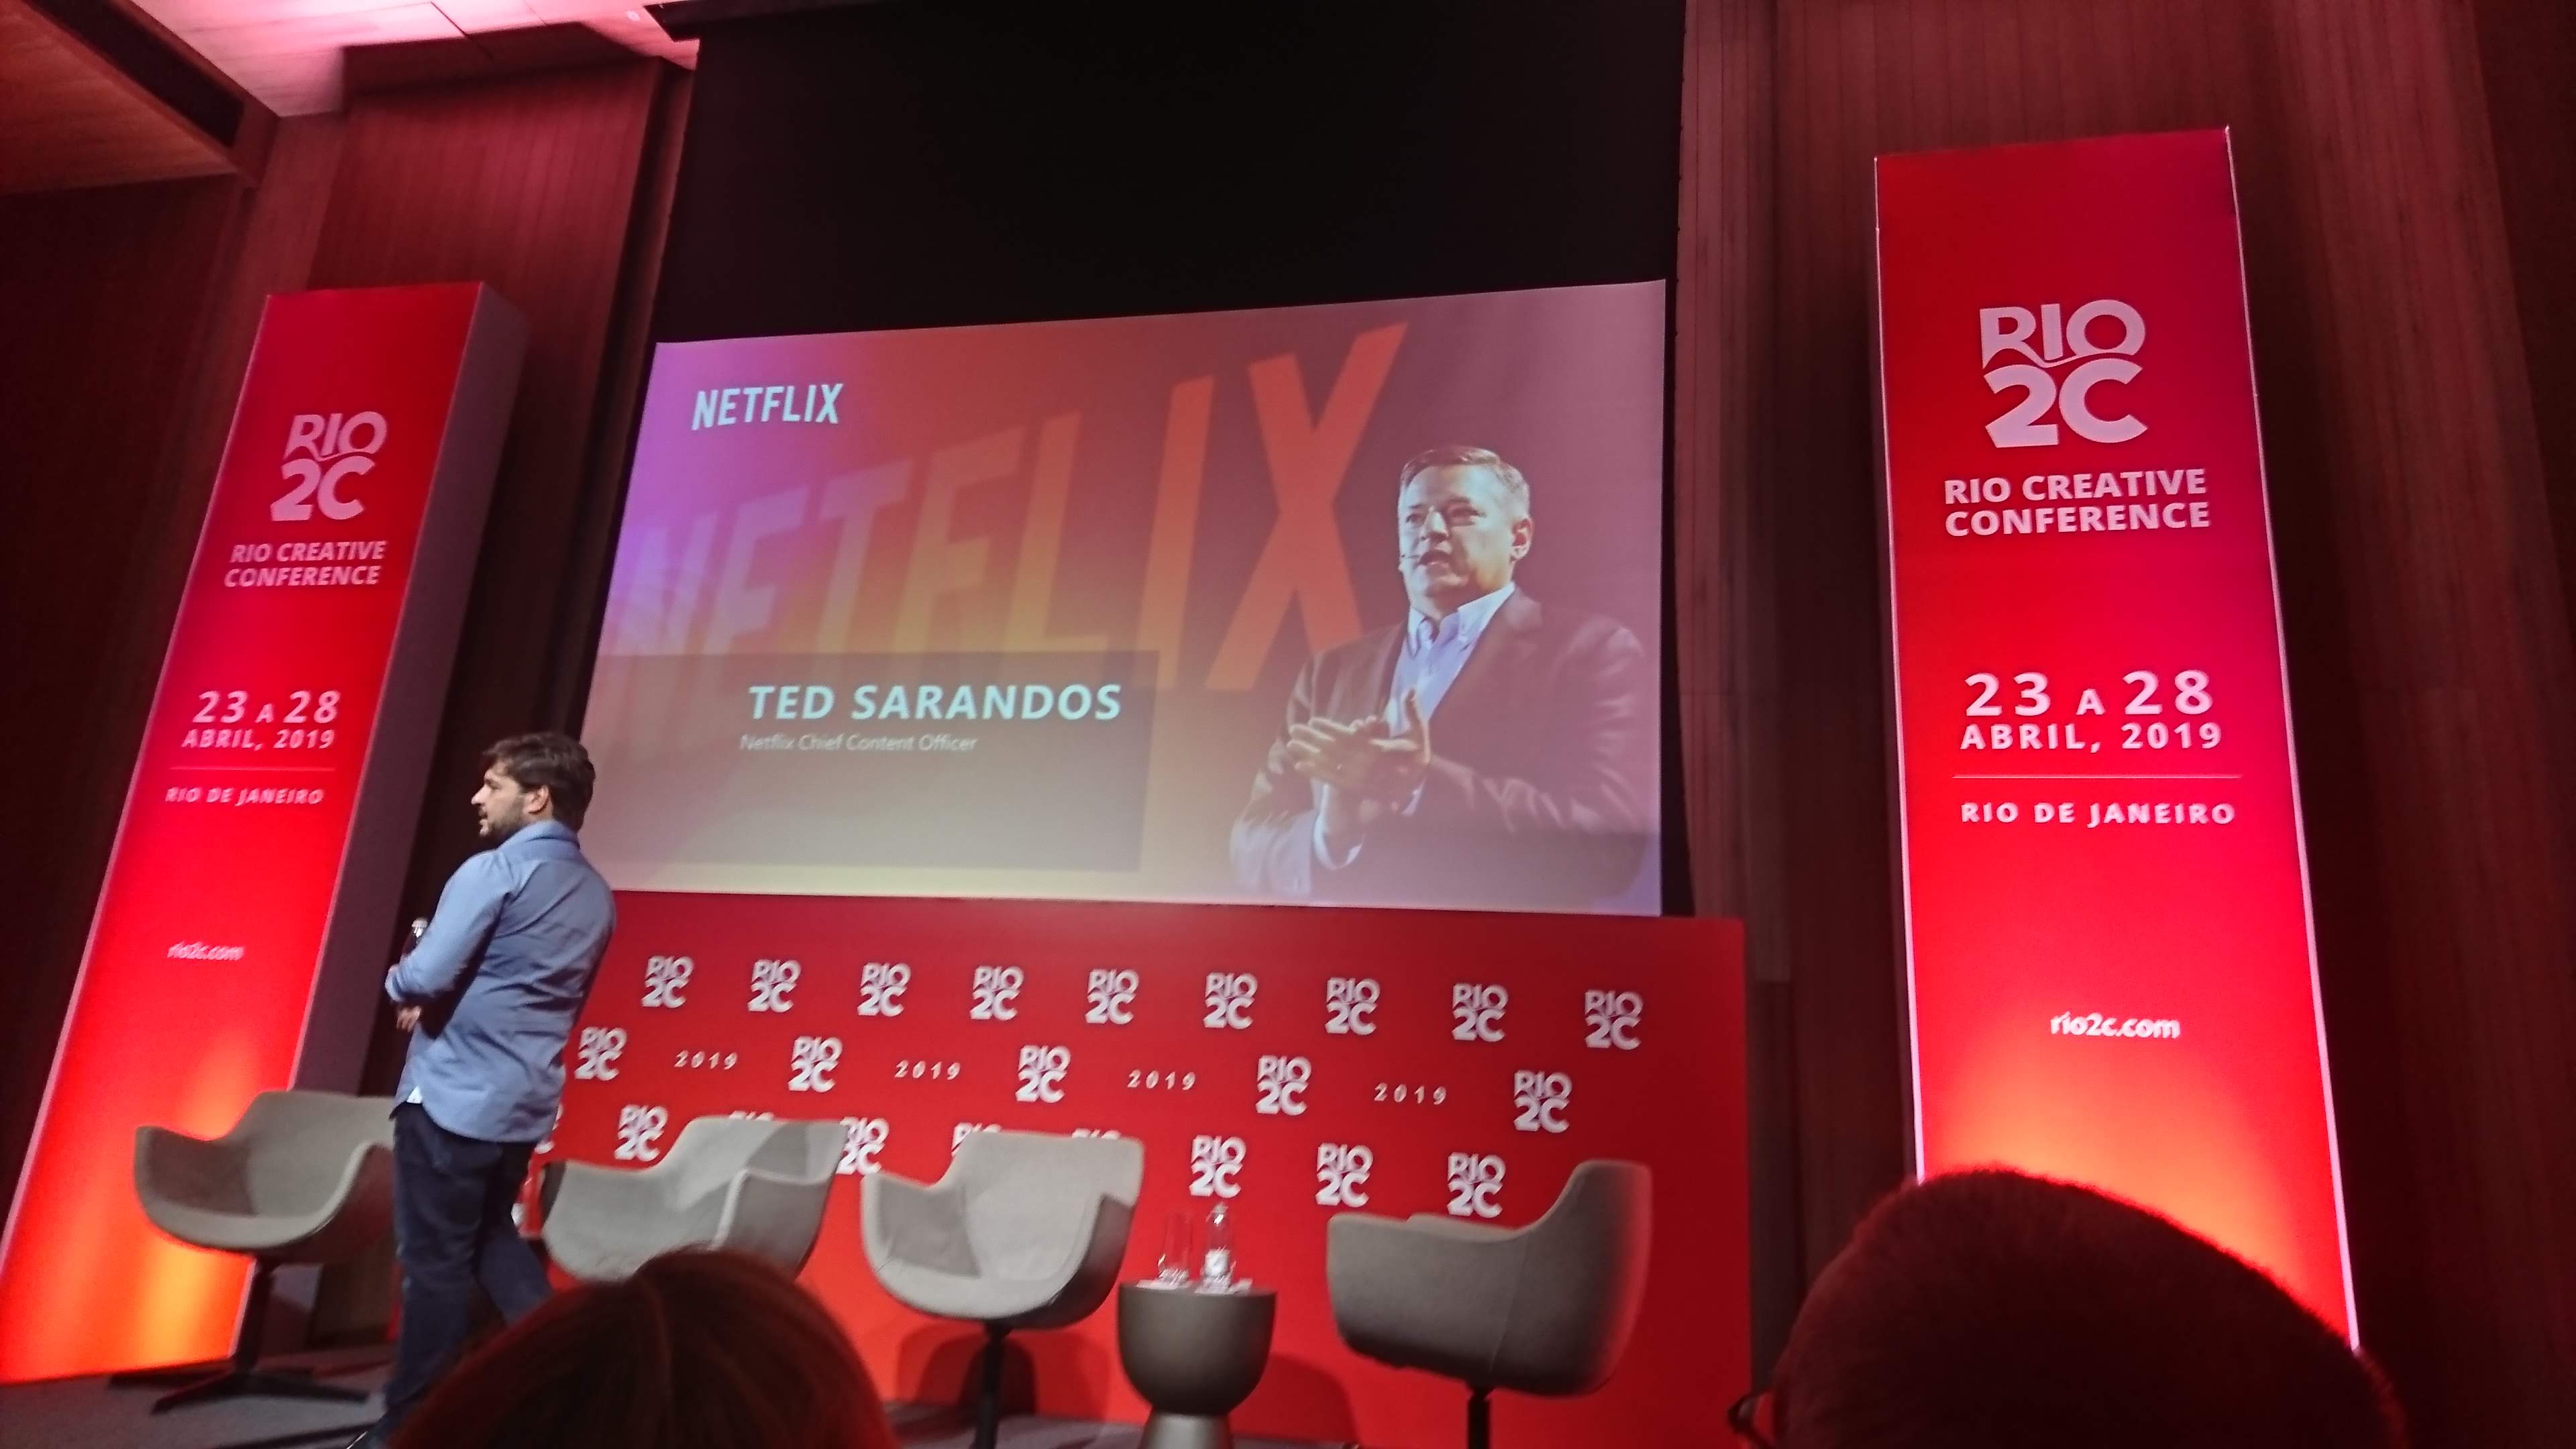 Rio2C | 2ª edição contará com a presença da Netflix, KondZilla e muito mais